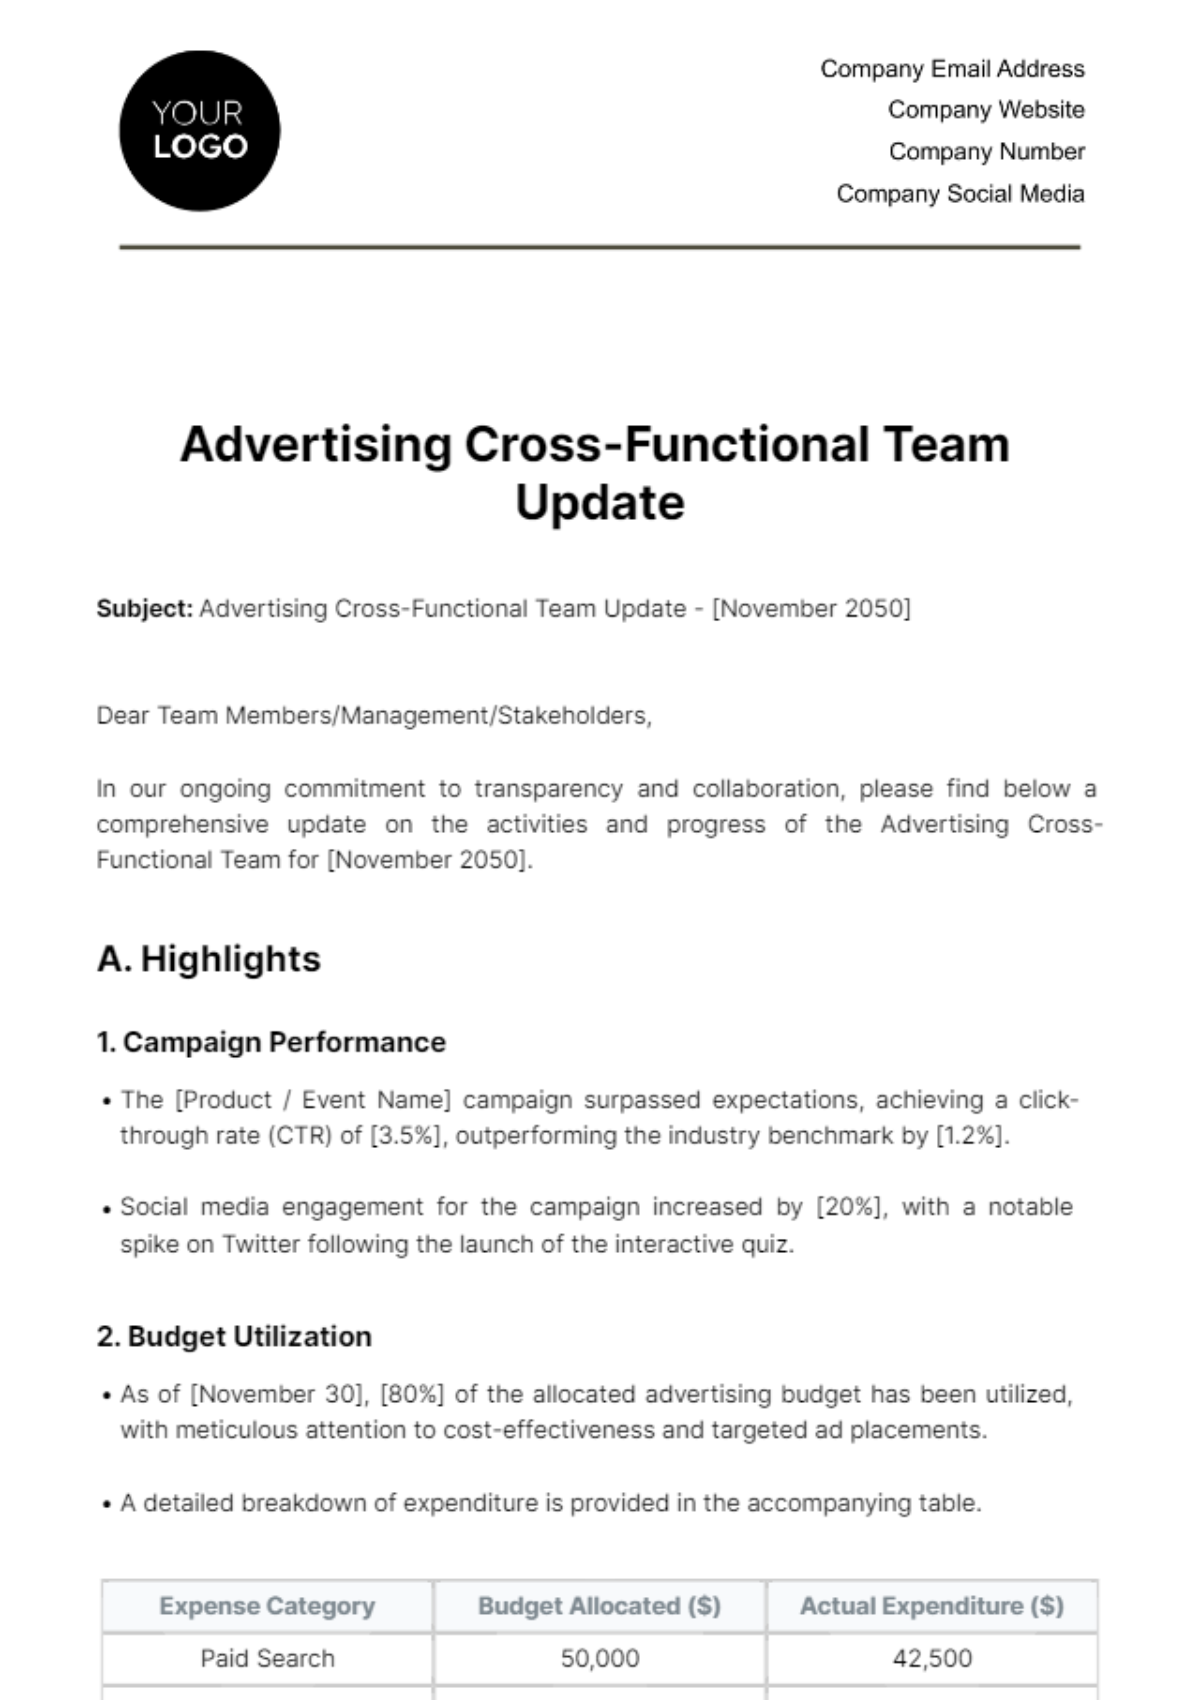 Advertising Cross-Functional Team Update Template